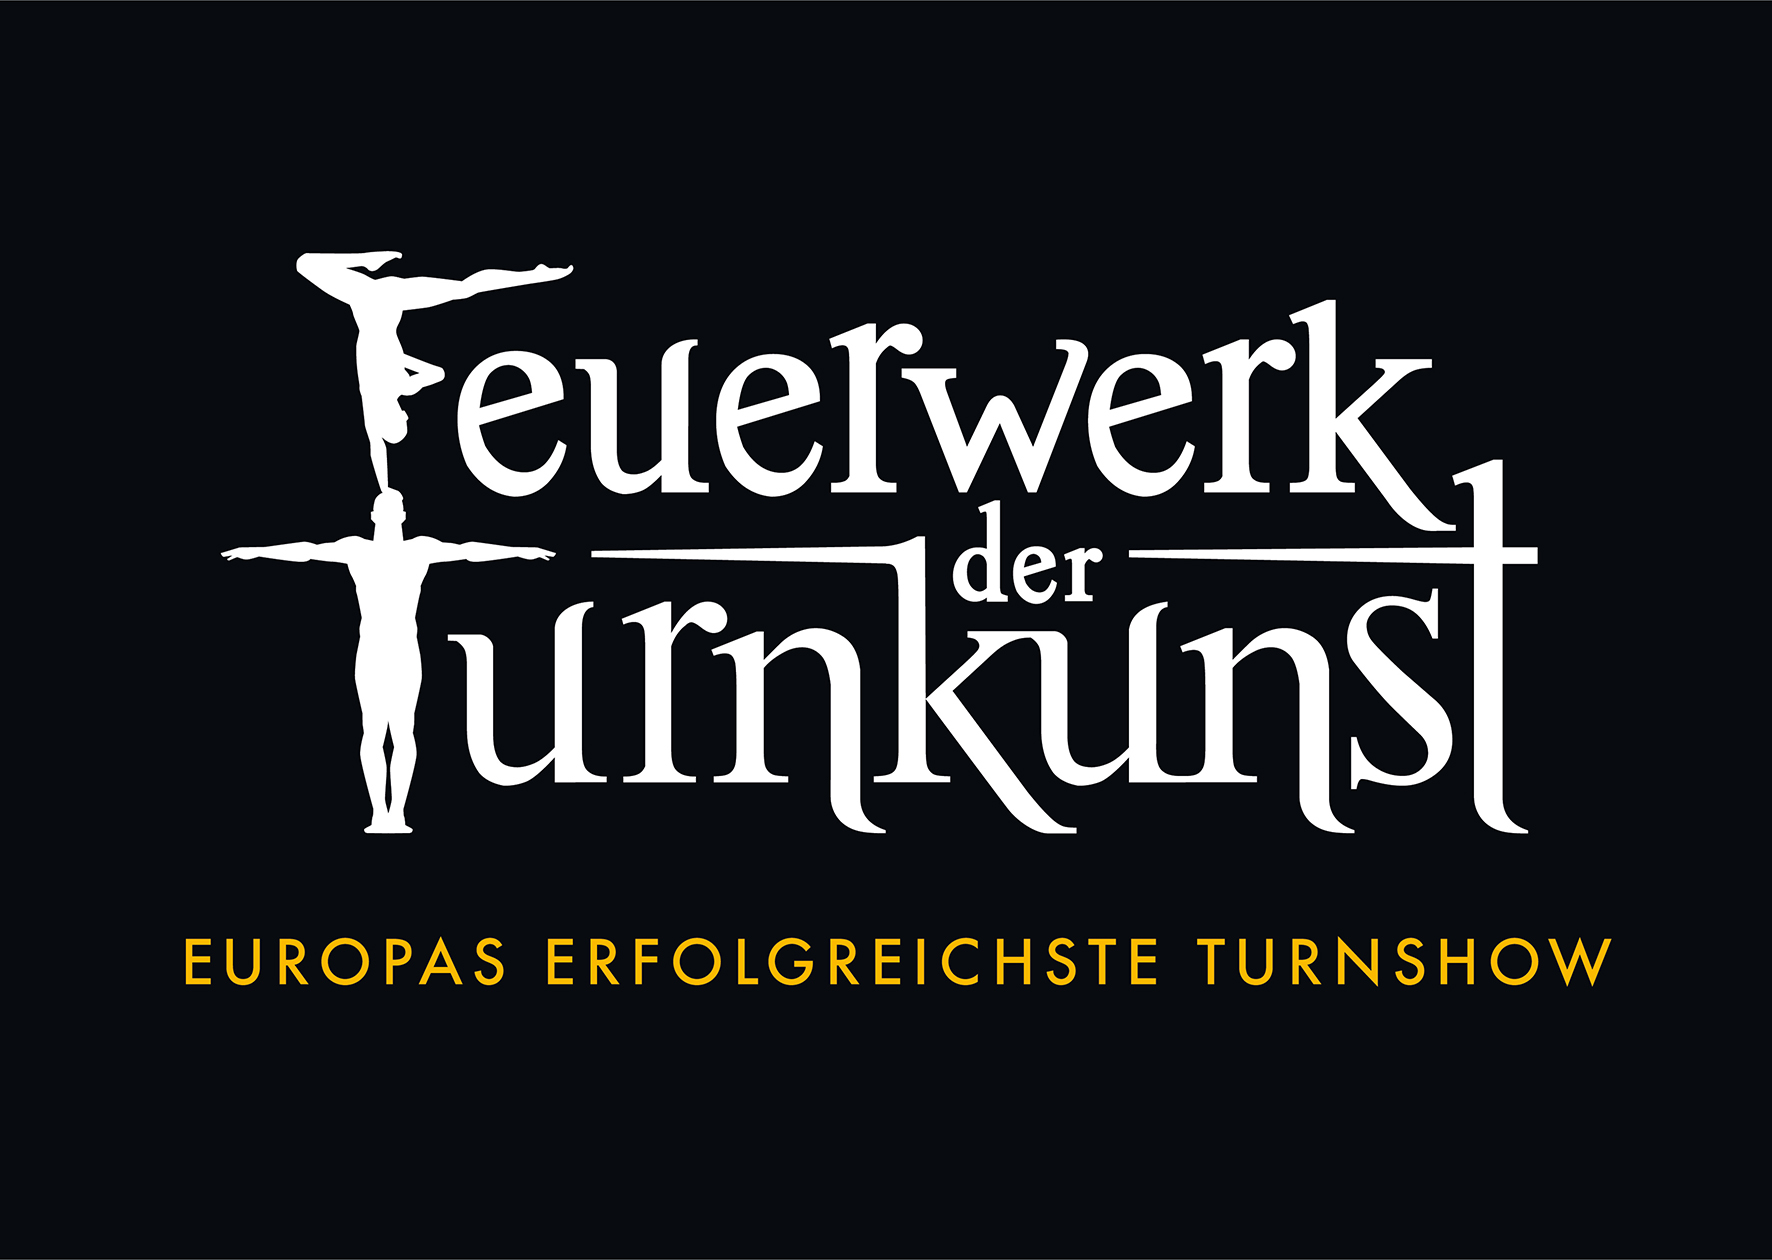 61b30997e6028Feuerwerk_der_Turnkunst-Logo_Claim_fbg_auf_schwarz_2021.jpeg